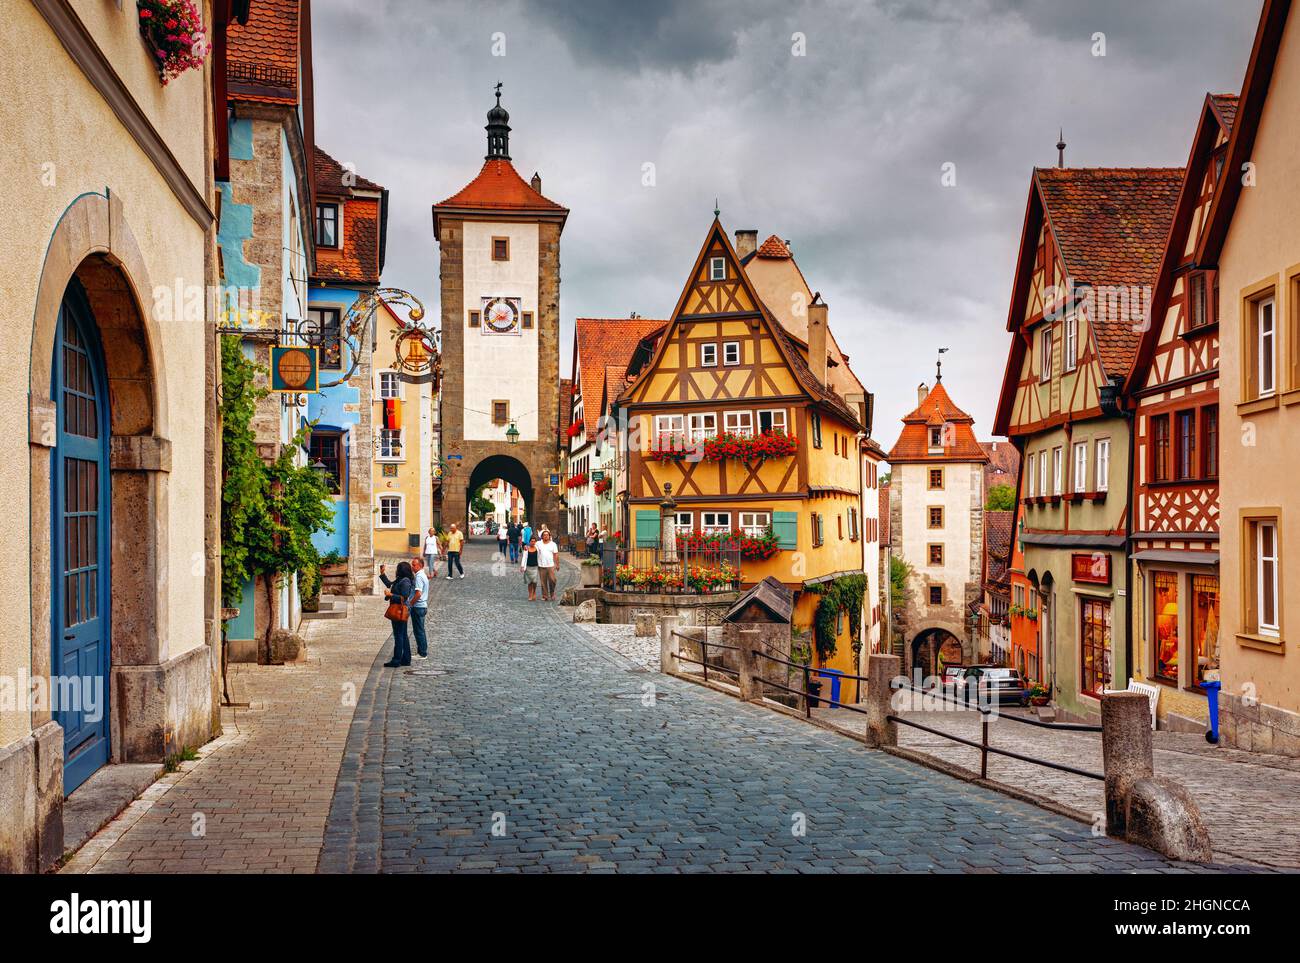 Allemagne, Ansbach - ville médiévale Rothenburg ob der Tauber - Plönlein avec Kobolzeller Steige et Spitalgasse Banque D'Images